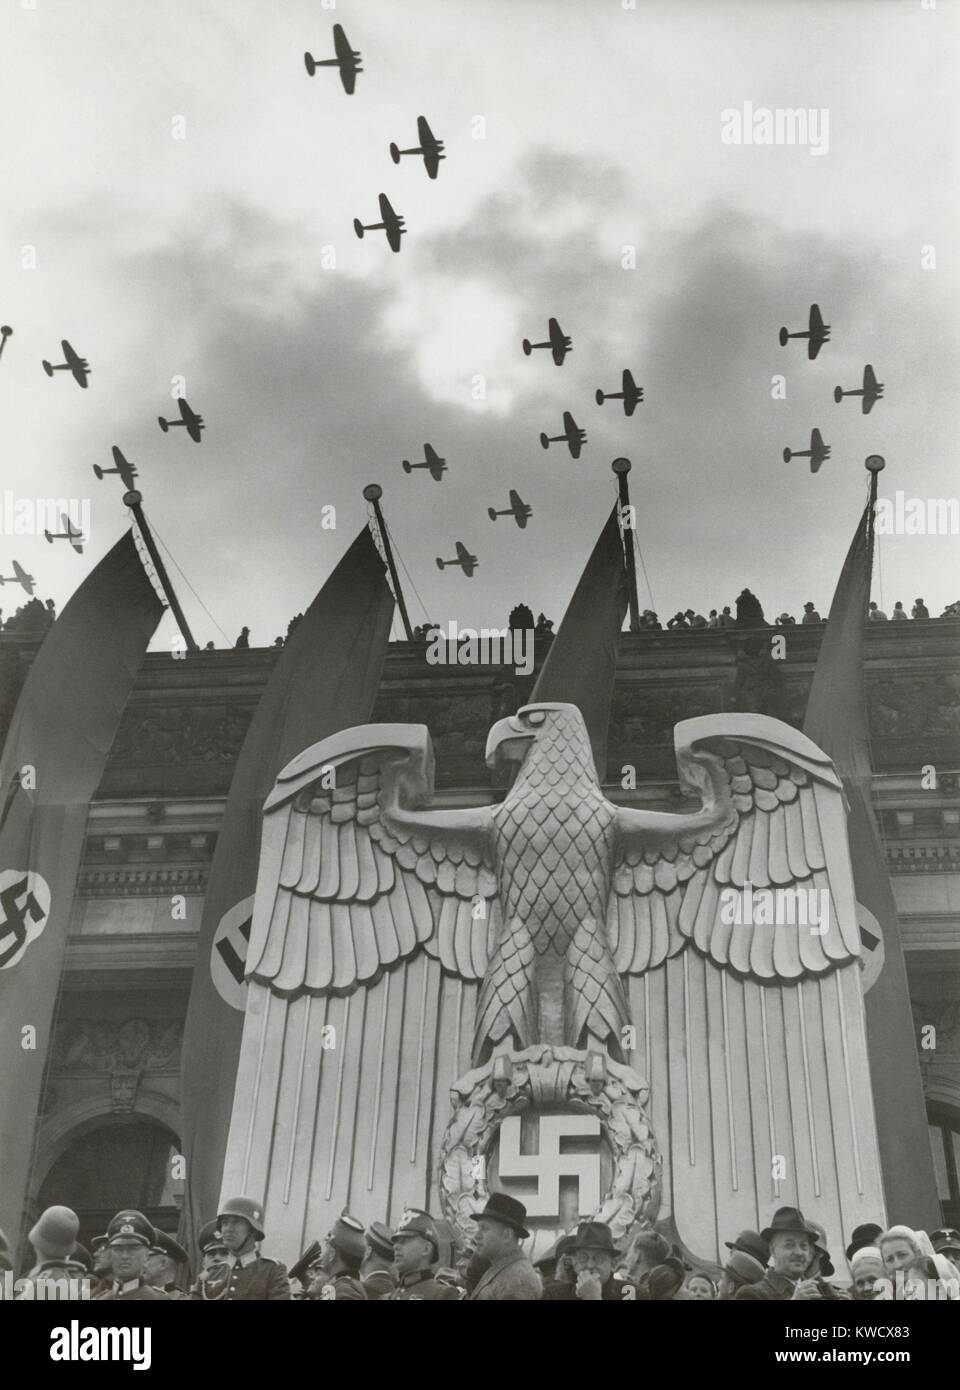 Technologie de la Luftwaffe en l'honneur de l'anniversaire de Hitler à Charlottenburg, Berlin, 20 avril 1939. Sur le bâtiment est une sculpture d'un aigle Nazi et bannières de croix gammées (BSLOC 2017 2 70) Banque D'Images